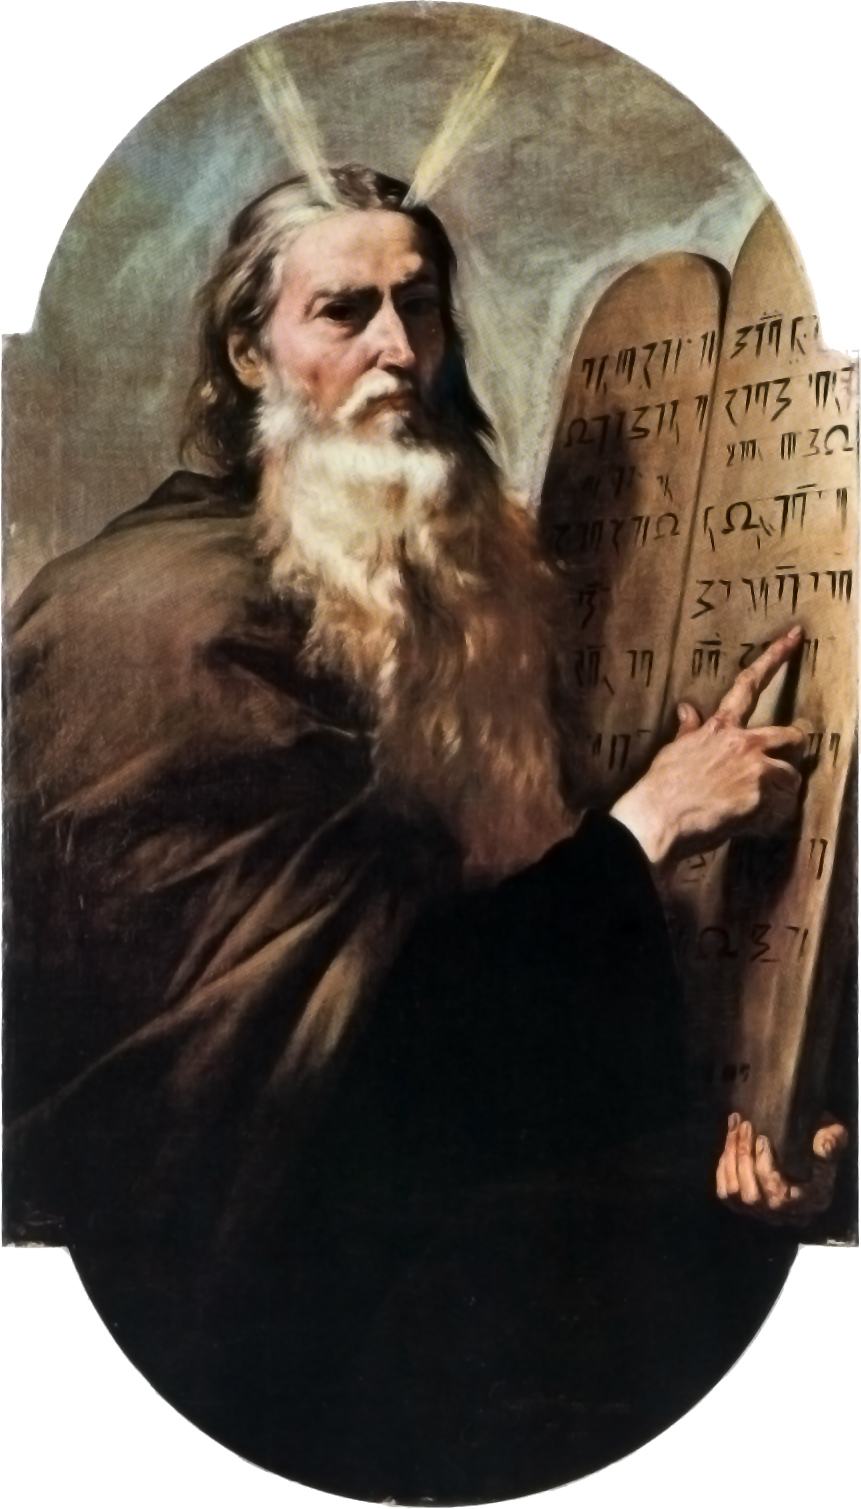 Auf dem Bild ist ein gemaltes Bild vom Propheten Moses zu sehen